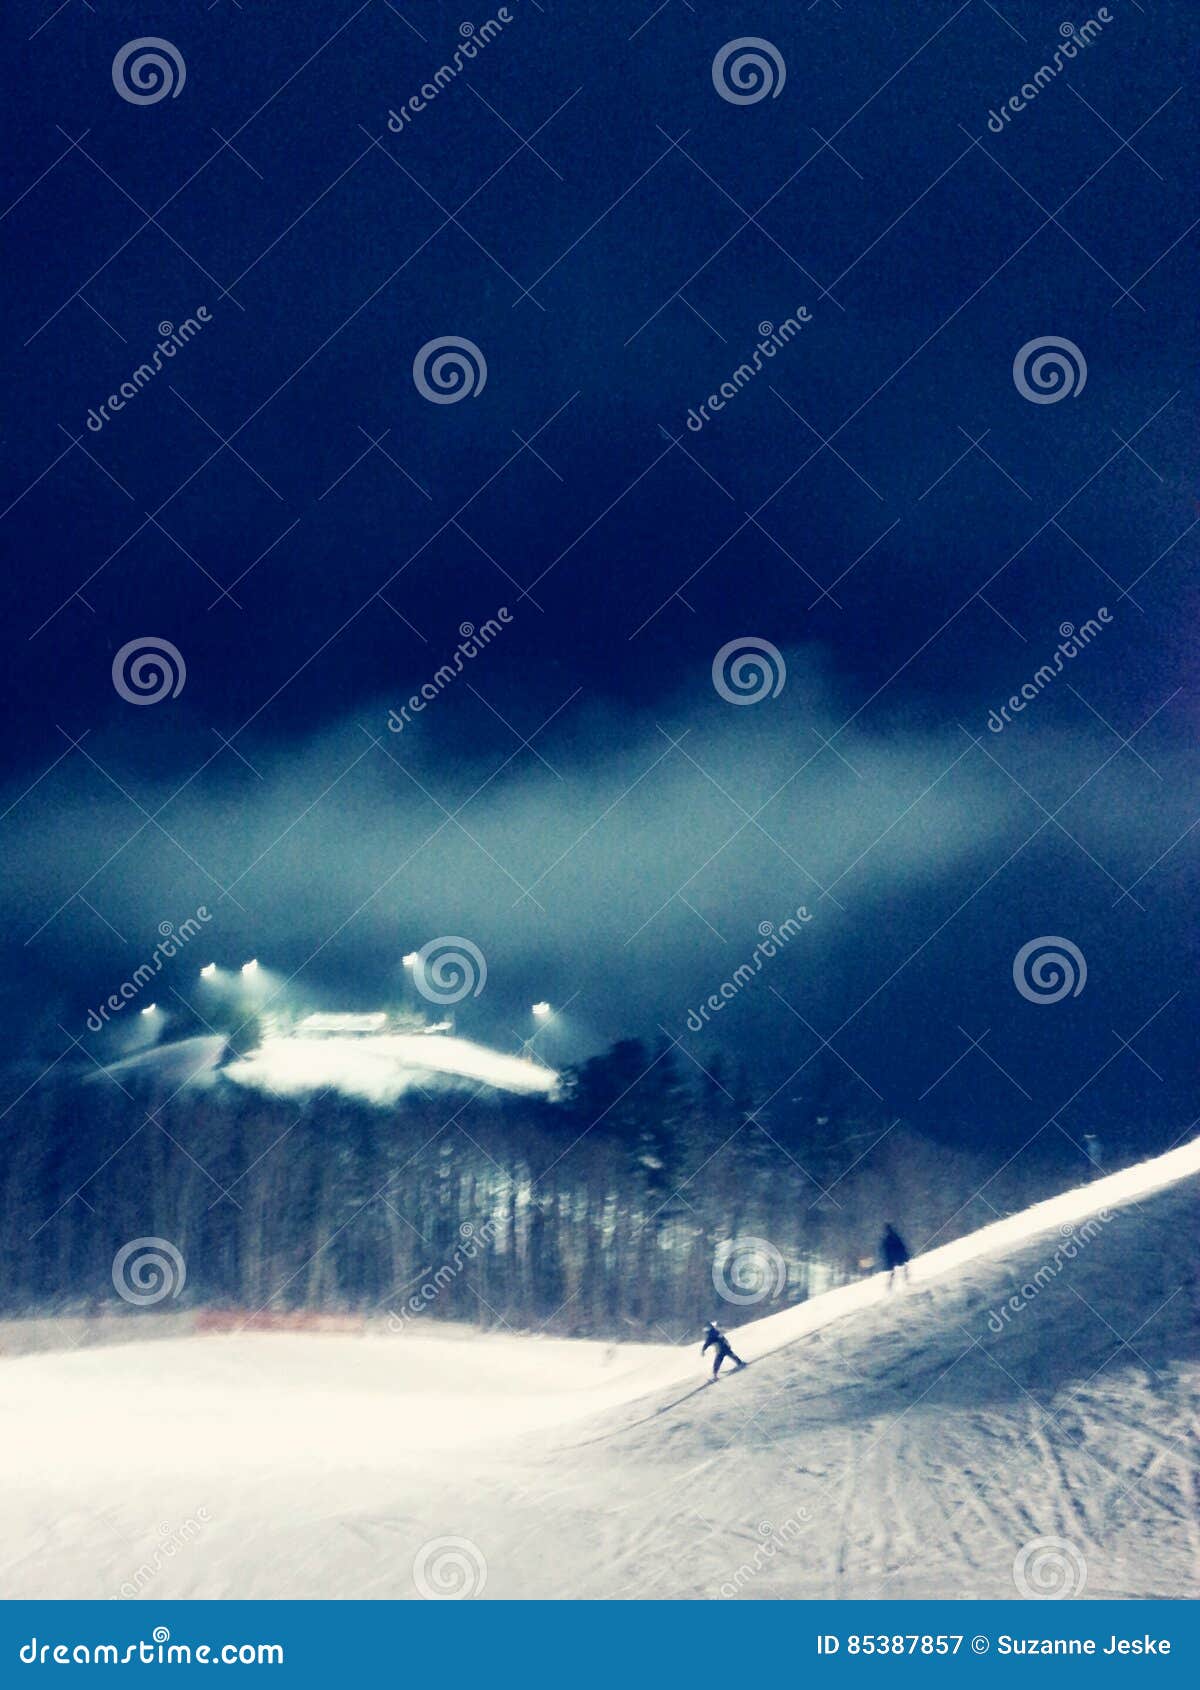 Blue Illuminated Night Skiing Stock Image - Image of skiing, blue: 85387857